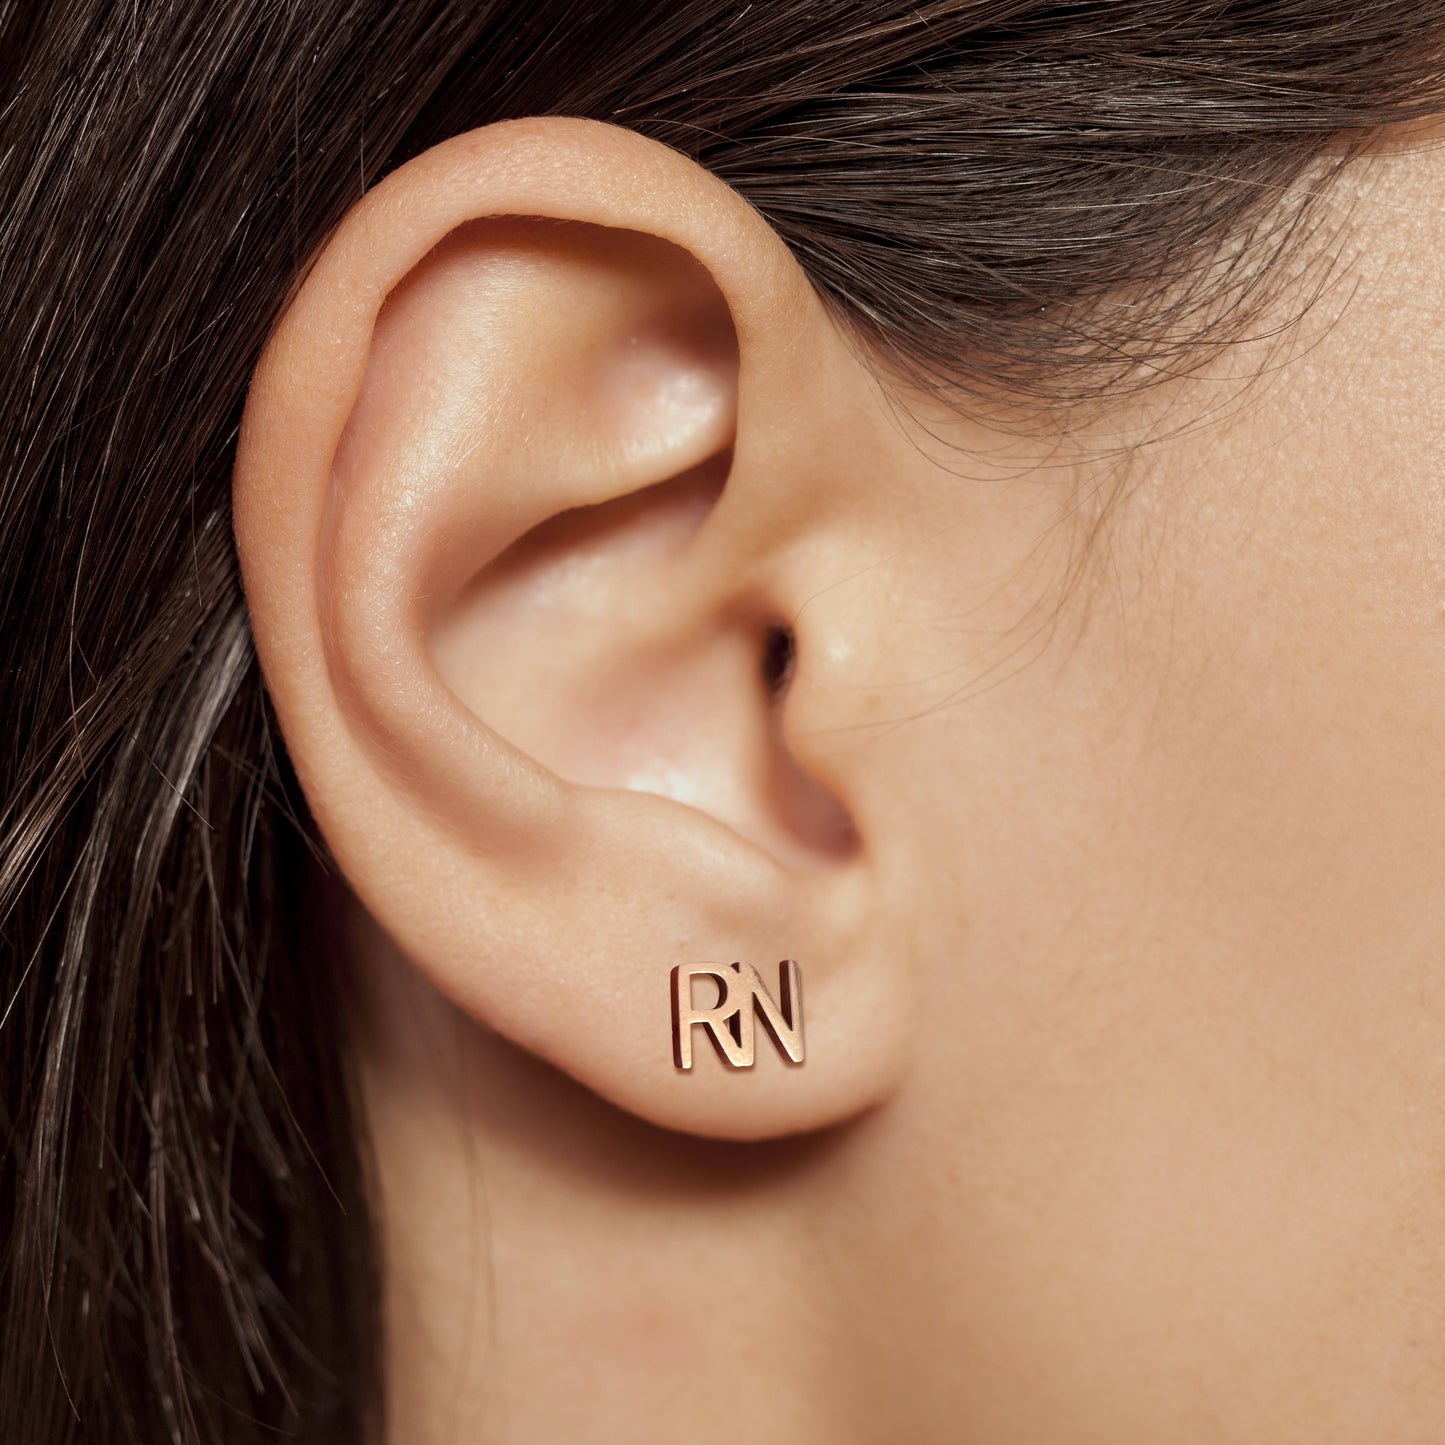 RN Earrings for nurses in rose gold